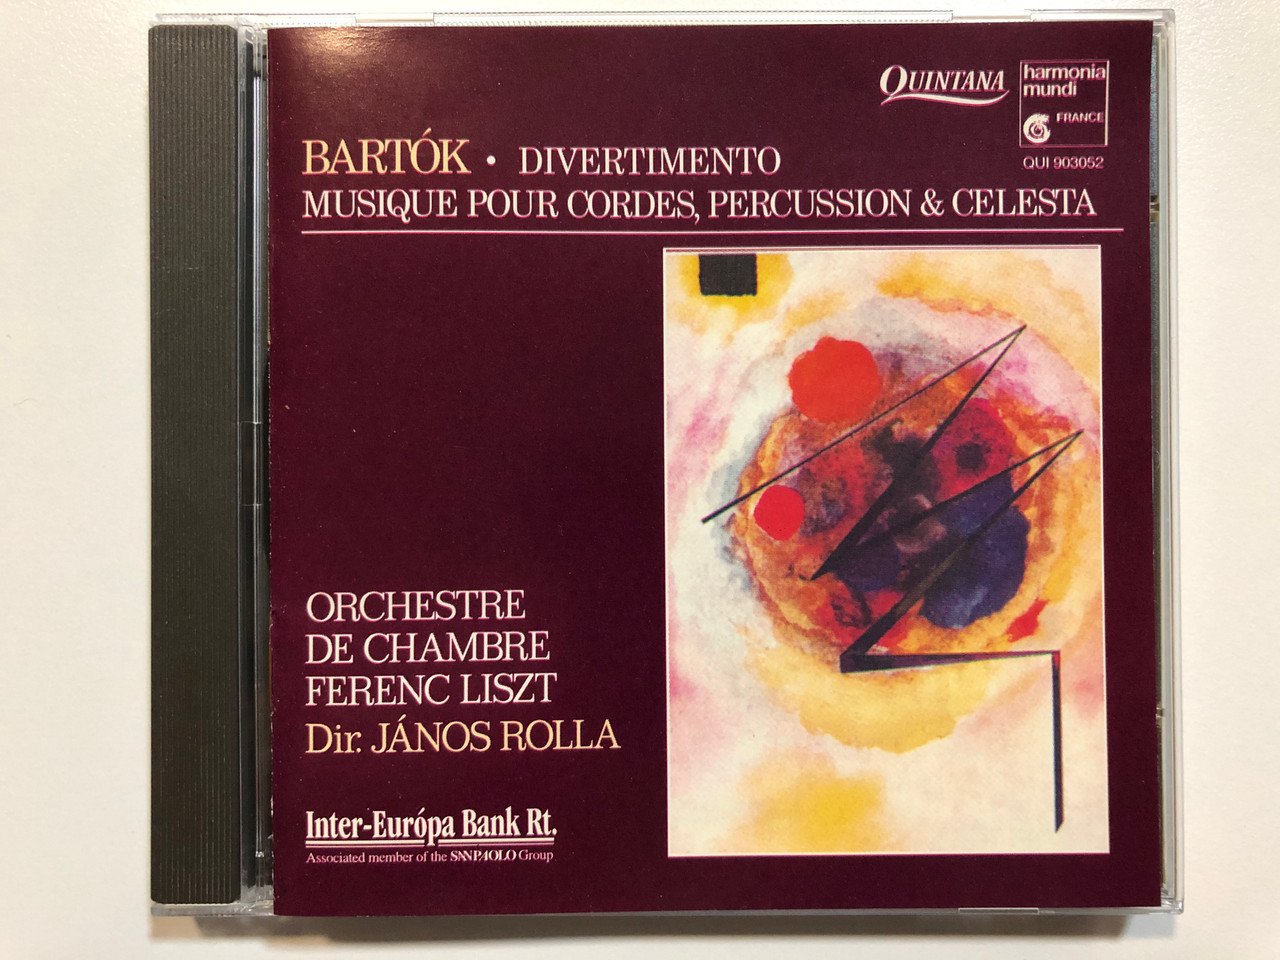 Bartók: Divertimento, Musique Pour Cordes, Percussions & Célesta /  Orchestre De Chambre Ferenc Liszt, János Rolla / Quintana Audio CD 1992 /  QUI 903052 - bibleinmylanguage